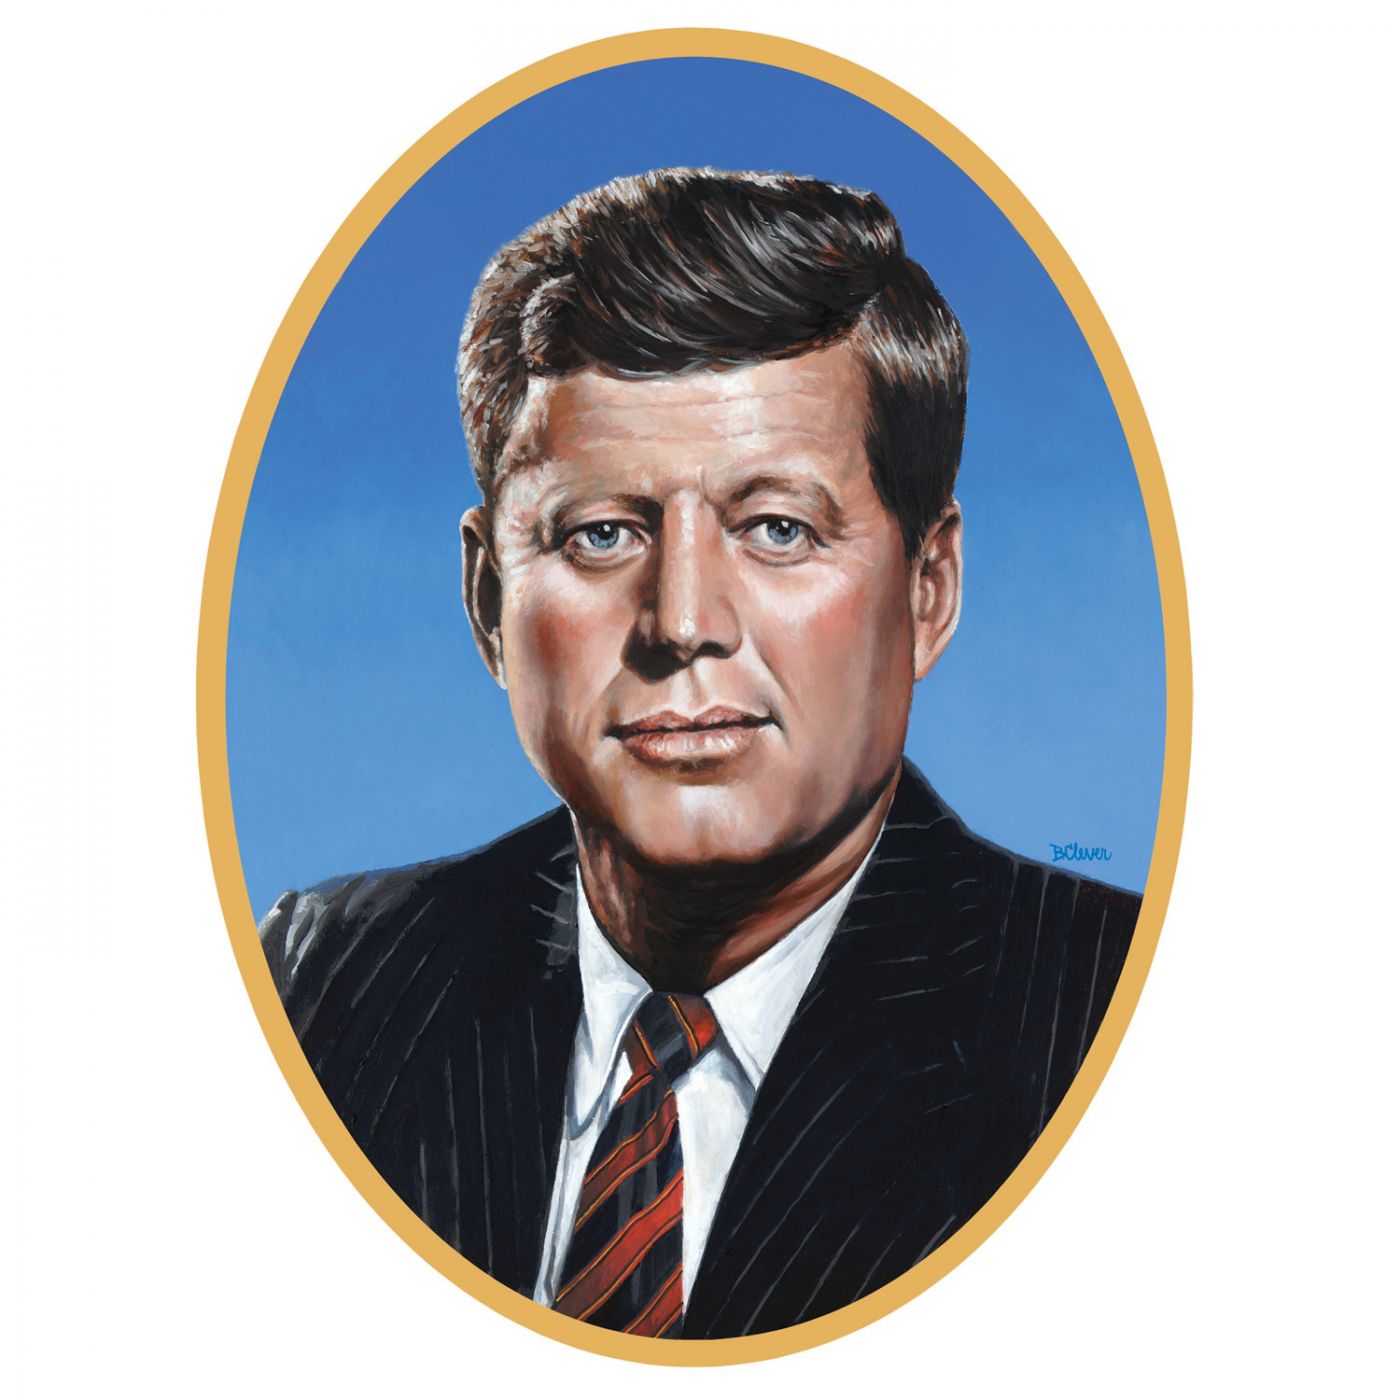 John F Kennedy Cutout image